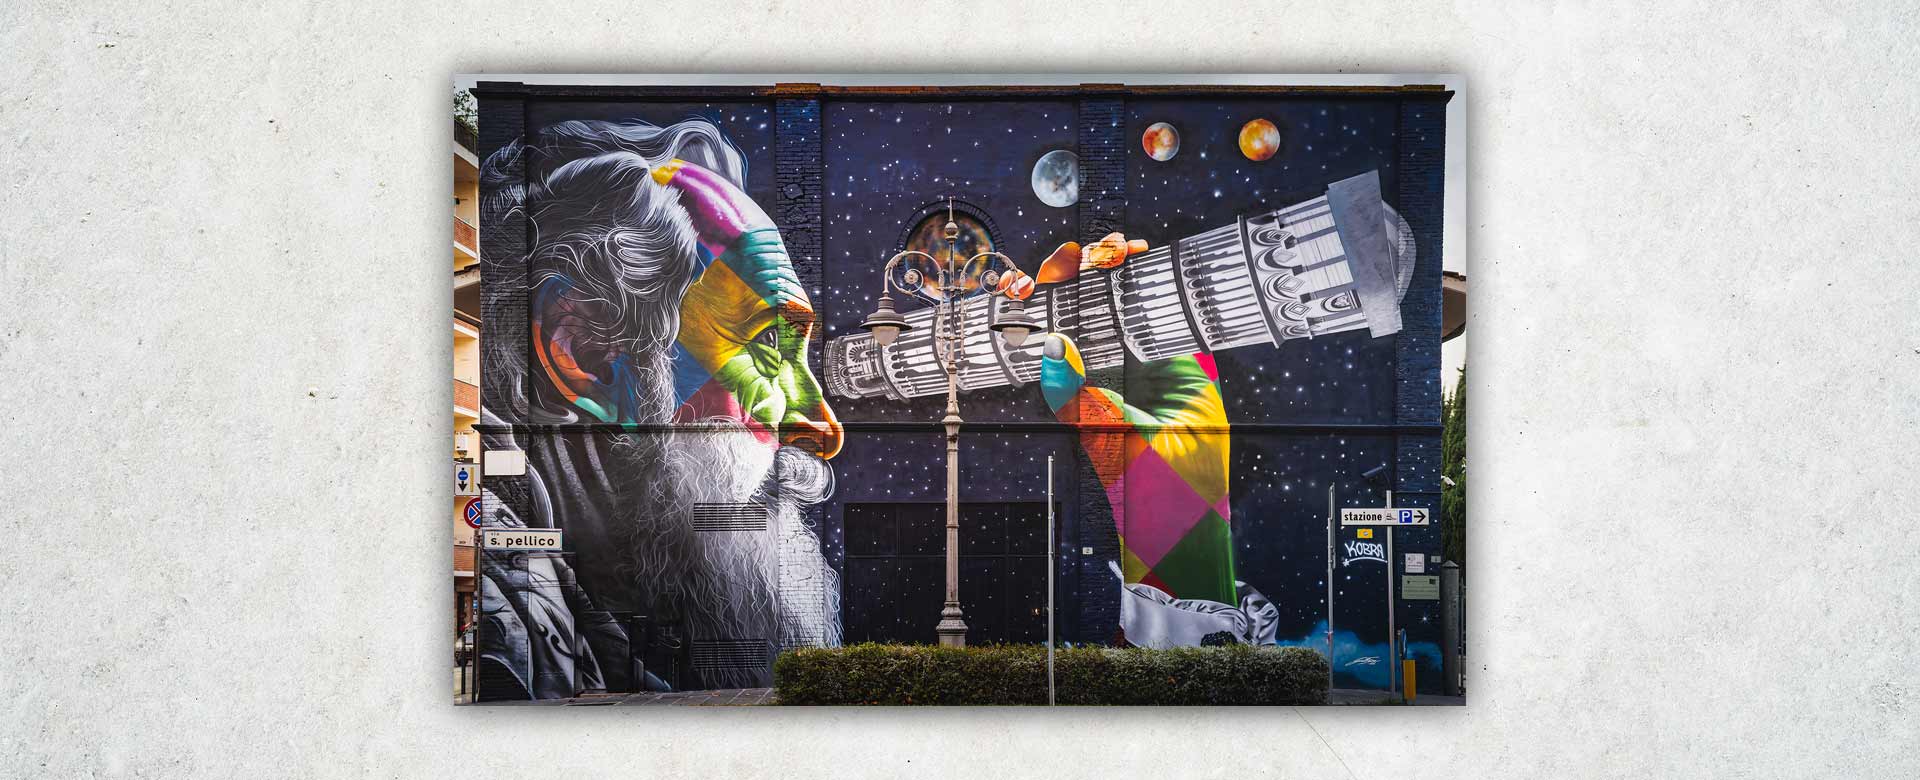 Il murales di Eduardo Kobra dedicato a Galileo Galilei